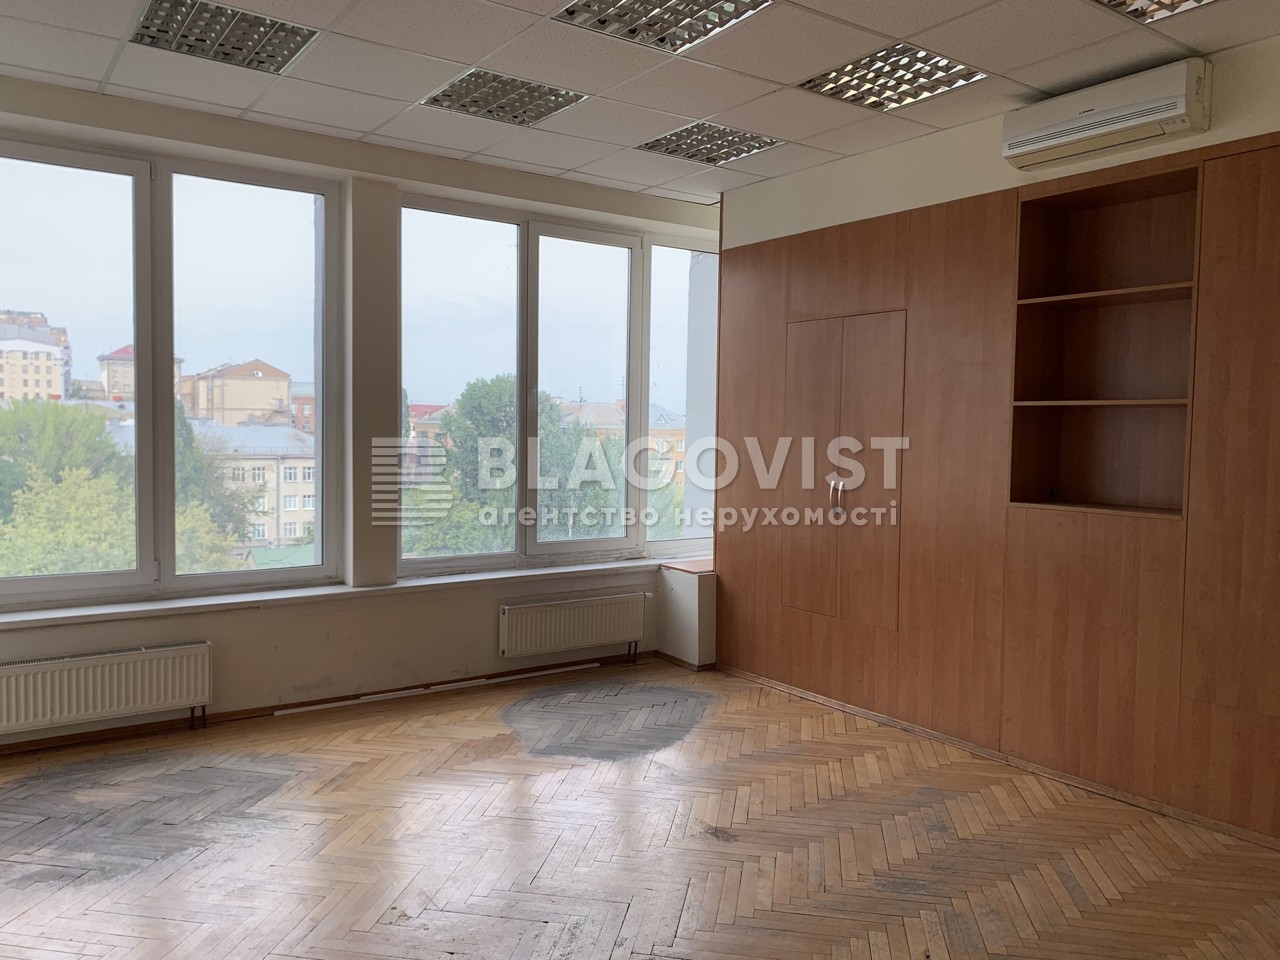  Офис, D-36535, Хмельницкого Богдана, Киев - Фото 4